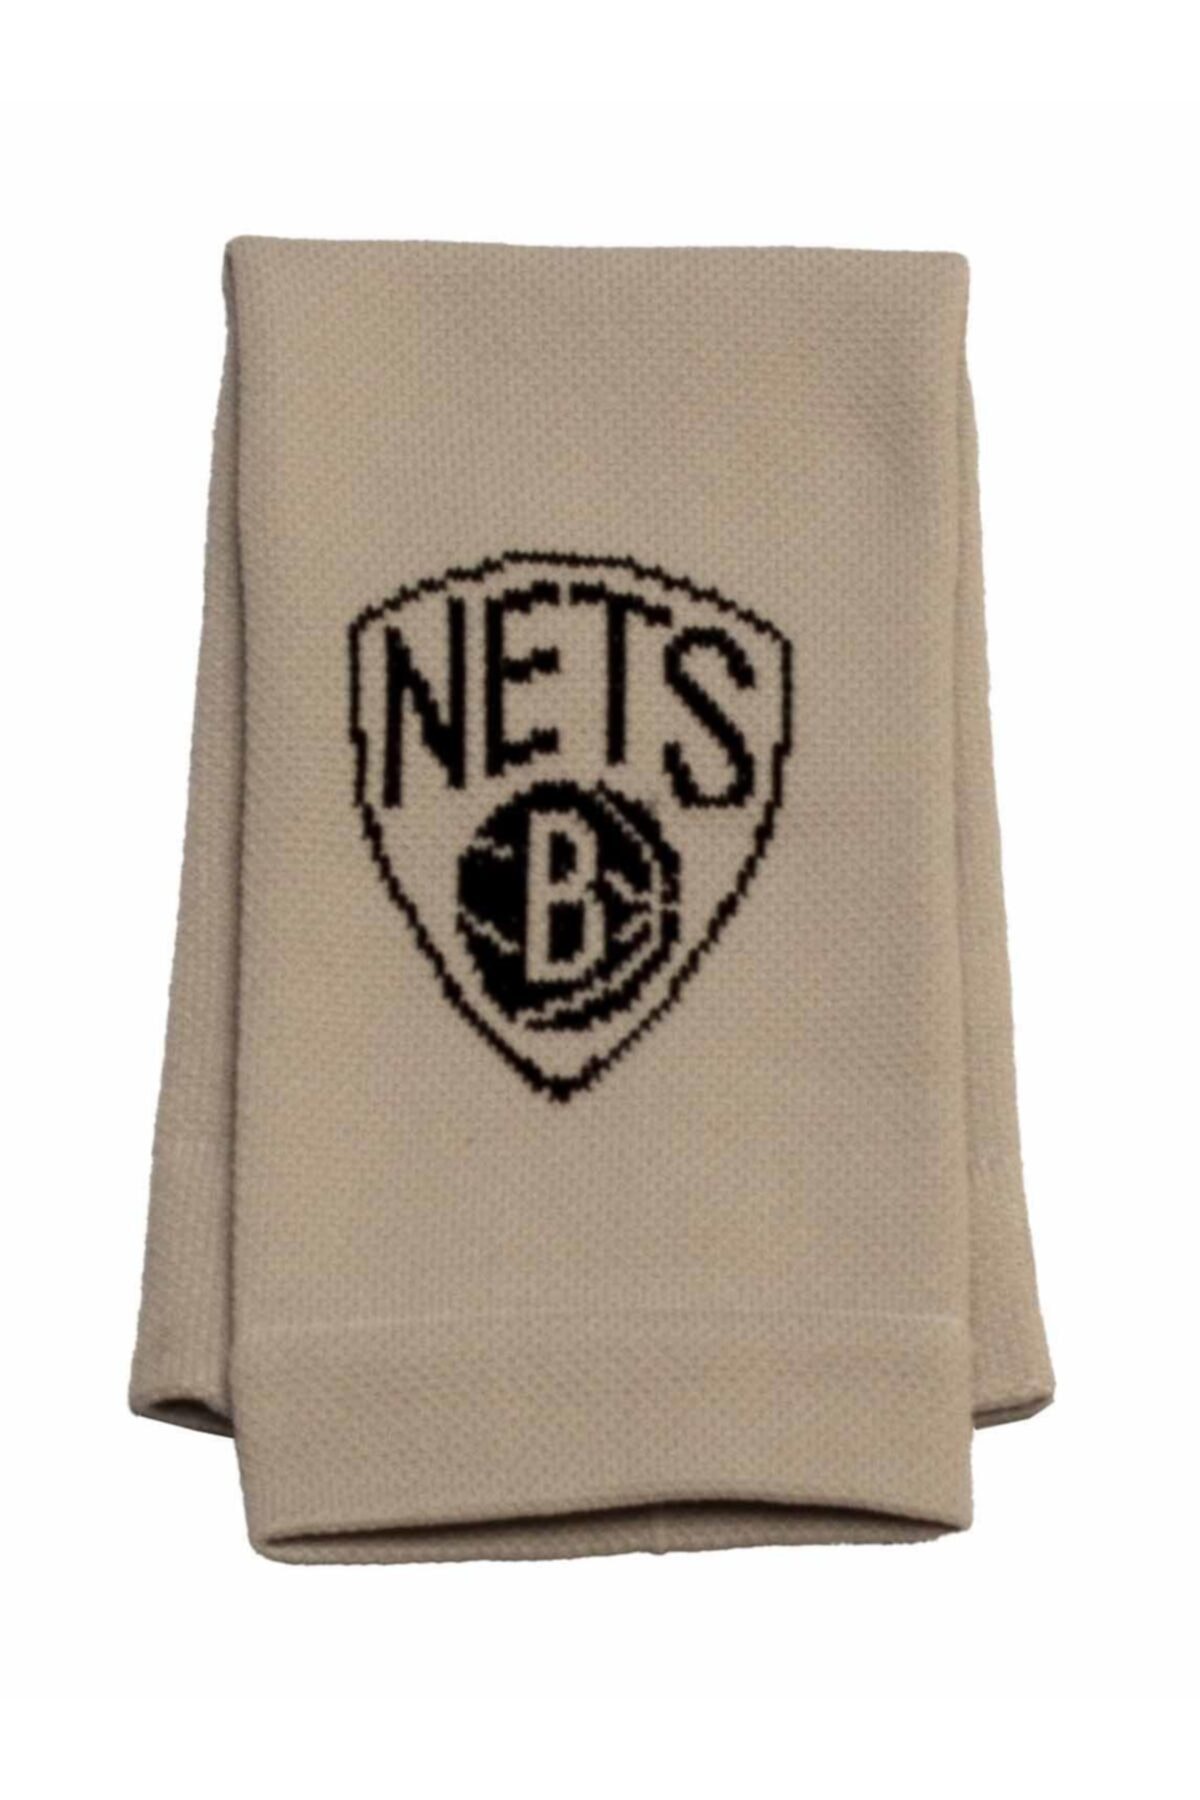 hardal tam tersi Bir sözleşme yaptım  TSHIRT35 Brooklyn Nets Nba Unisex Basketbol Kolluk Fiyatı, Yorumları -  TRENDYOL